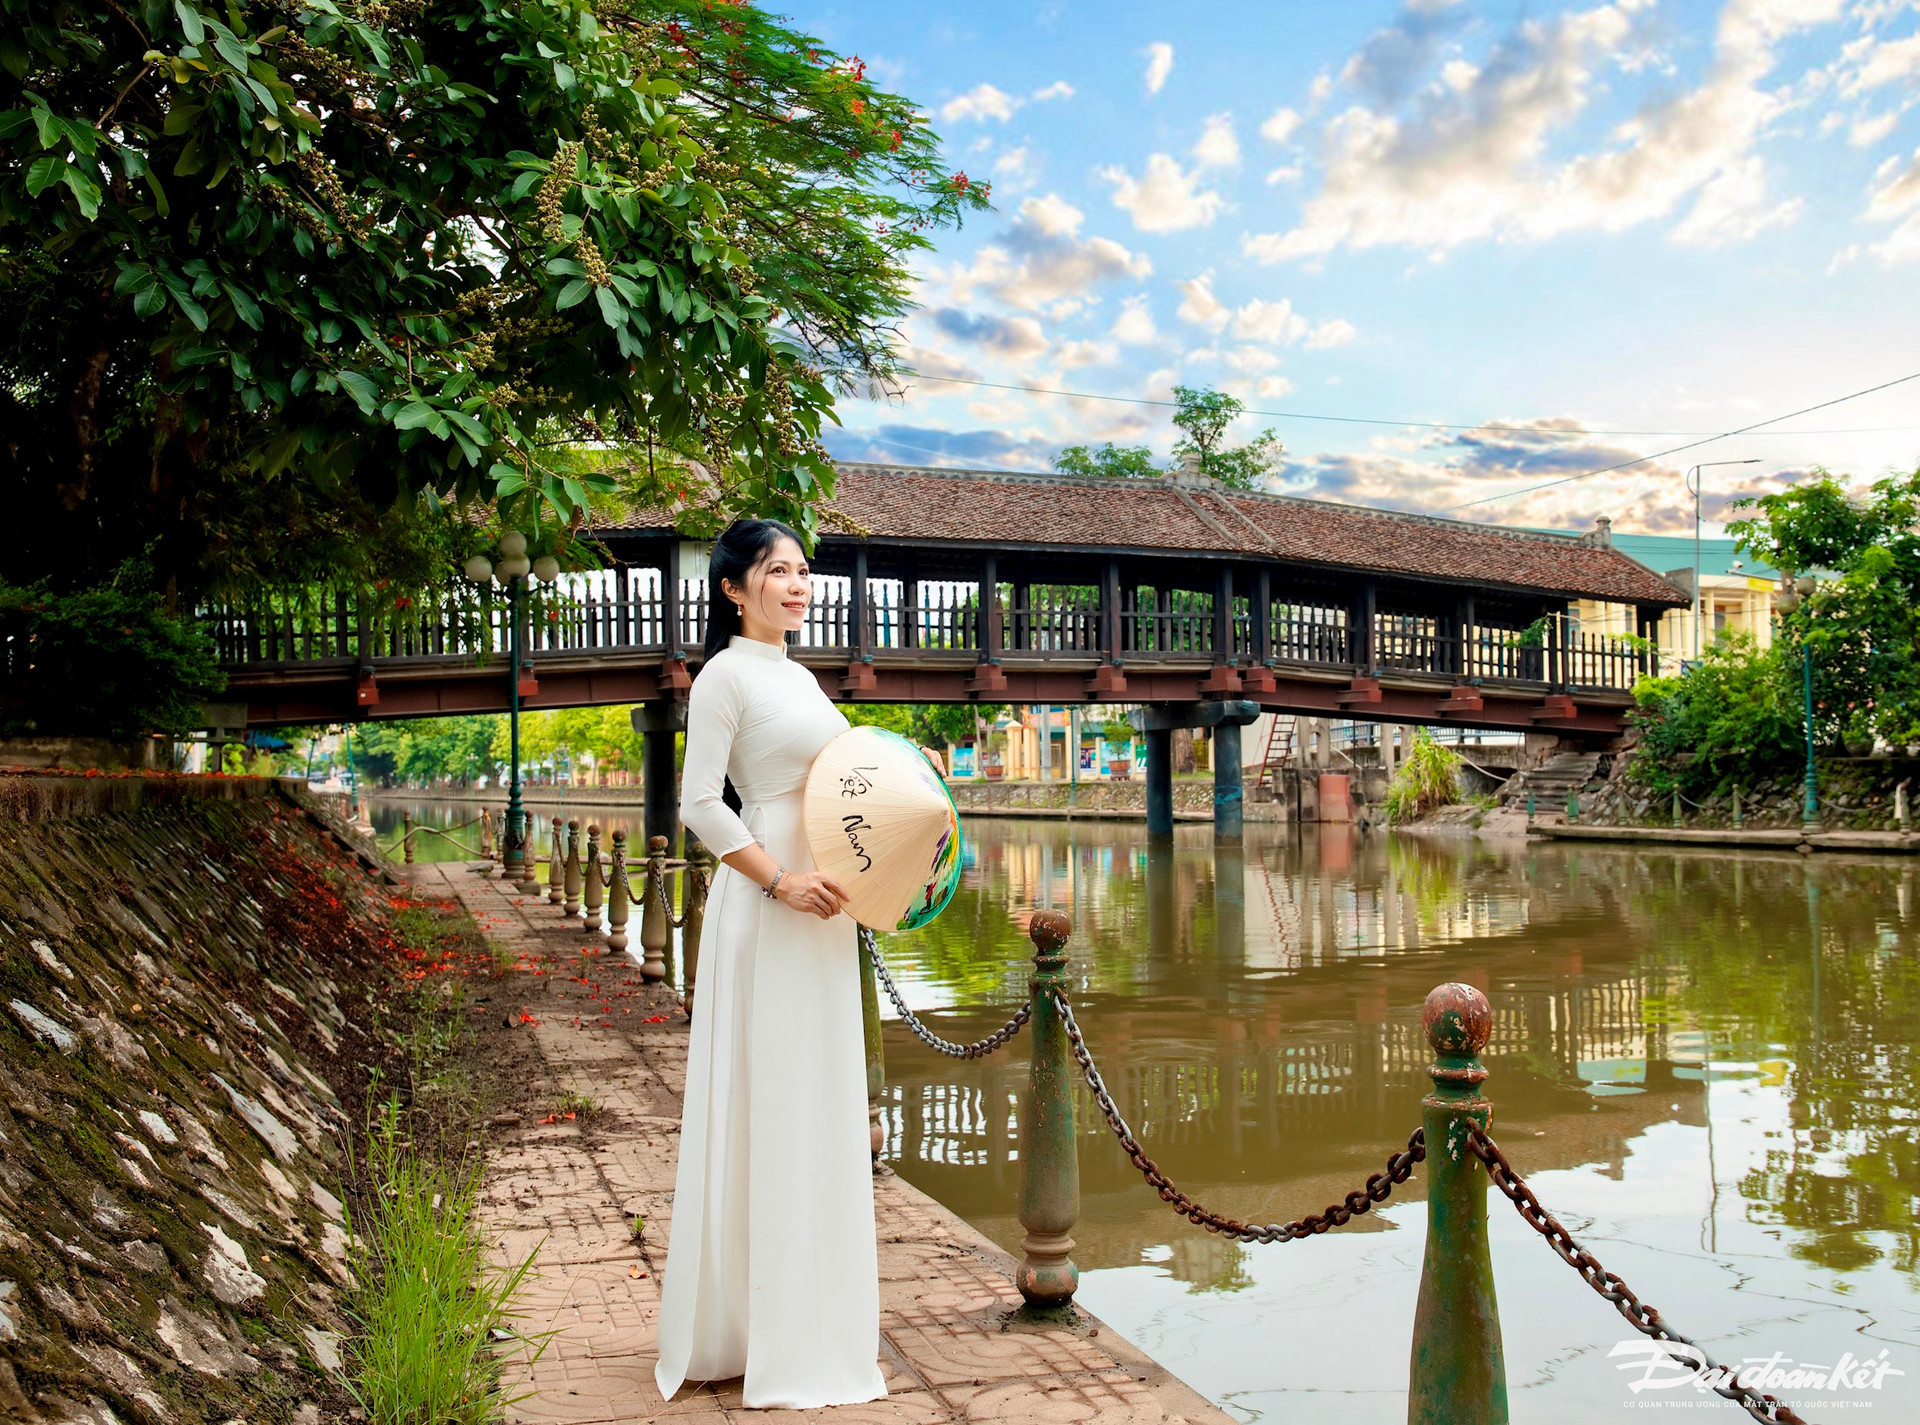 Theo UBND huyện Kim Sơn, với niên đại hơn 1 thế kỷ, cầu ngói Phát Diệm là một trong những cây cầu ngói có kiến trúc độc đáo và lâu đời nhất ở Việt Nam. Năm 2018, cầu ngói Phát Diệm được công nhận là Di tích lịch sử văn hóa cấp tỉnh. Ảnh